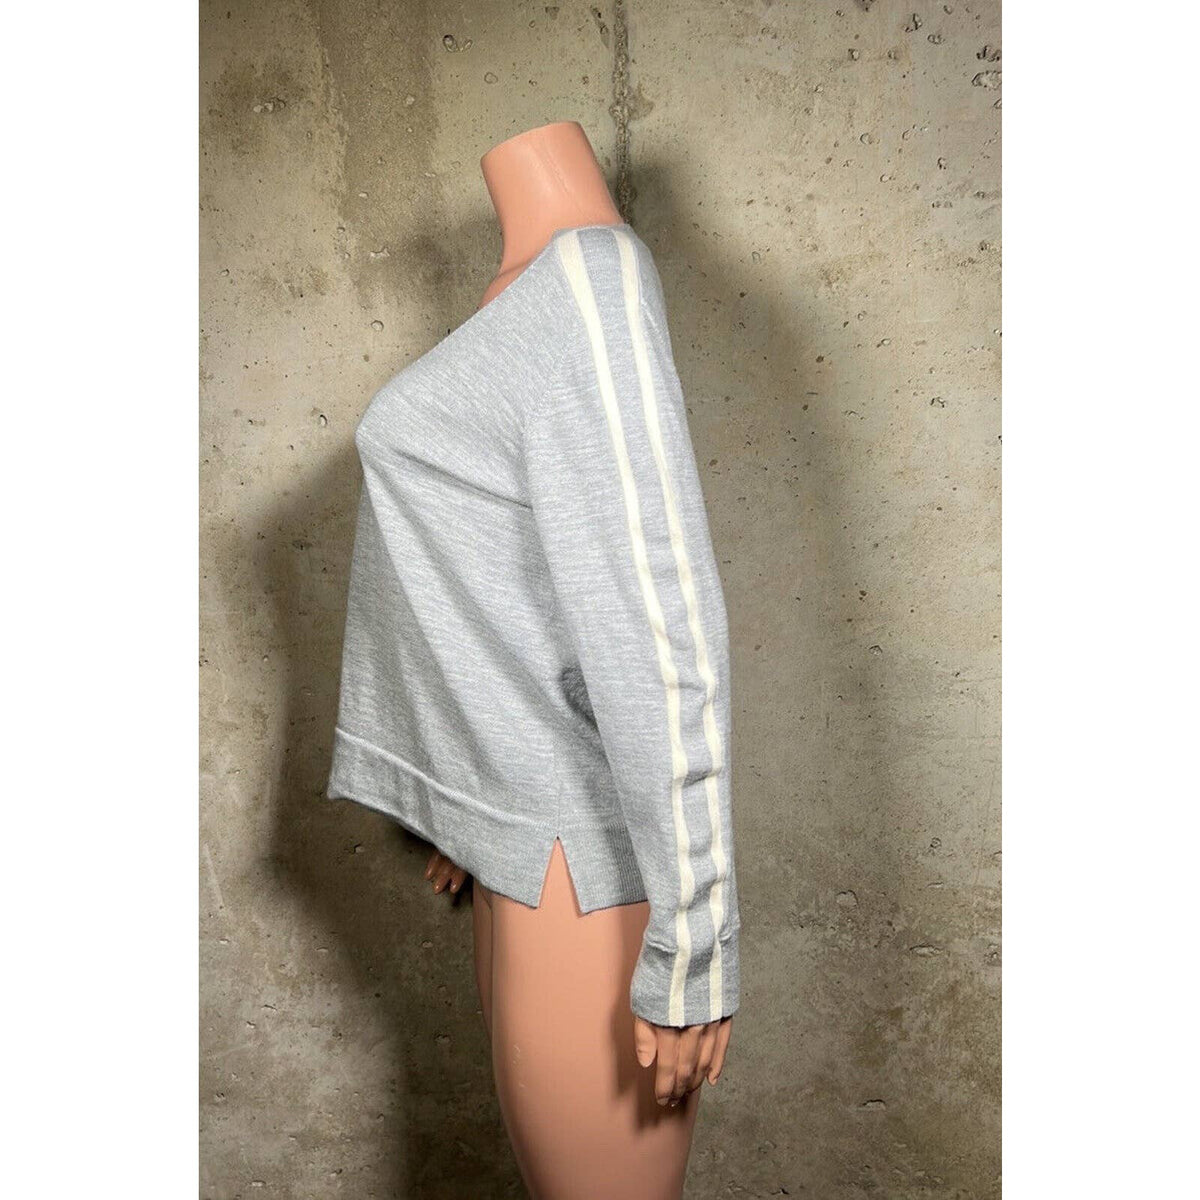 Akris Punto Grey V-Neck White Striped Sweater Sz.14